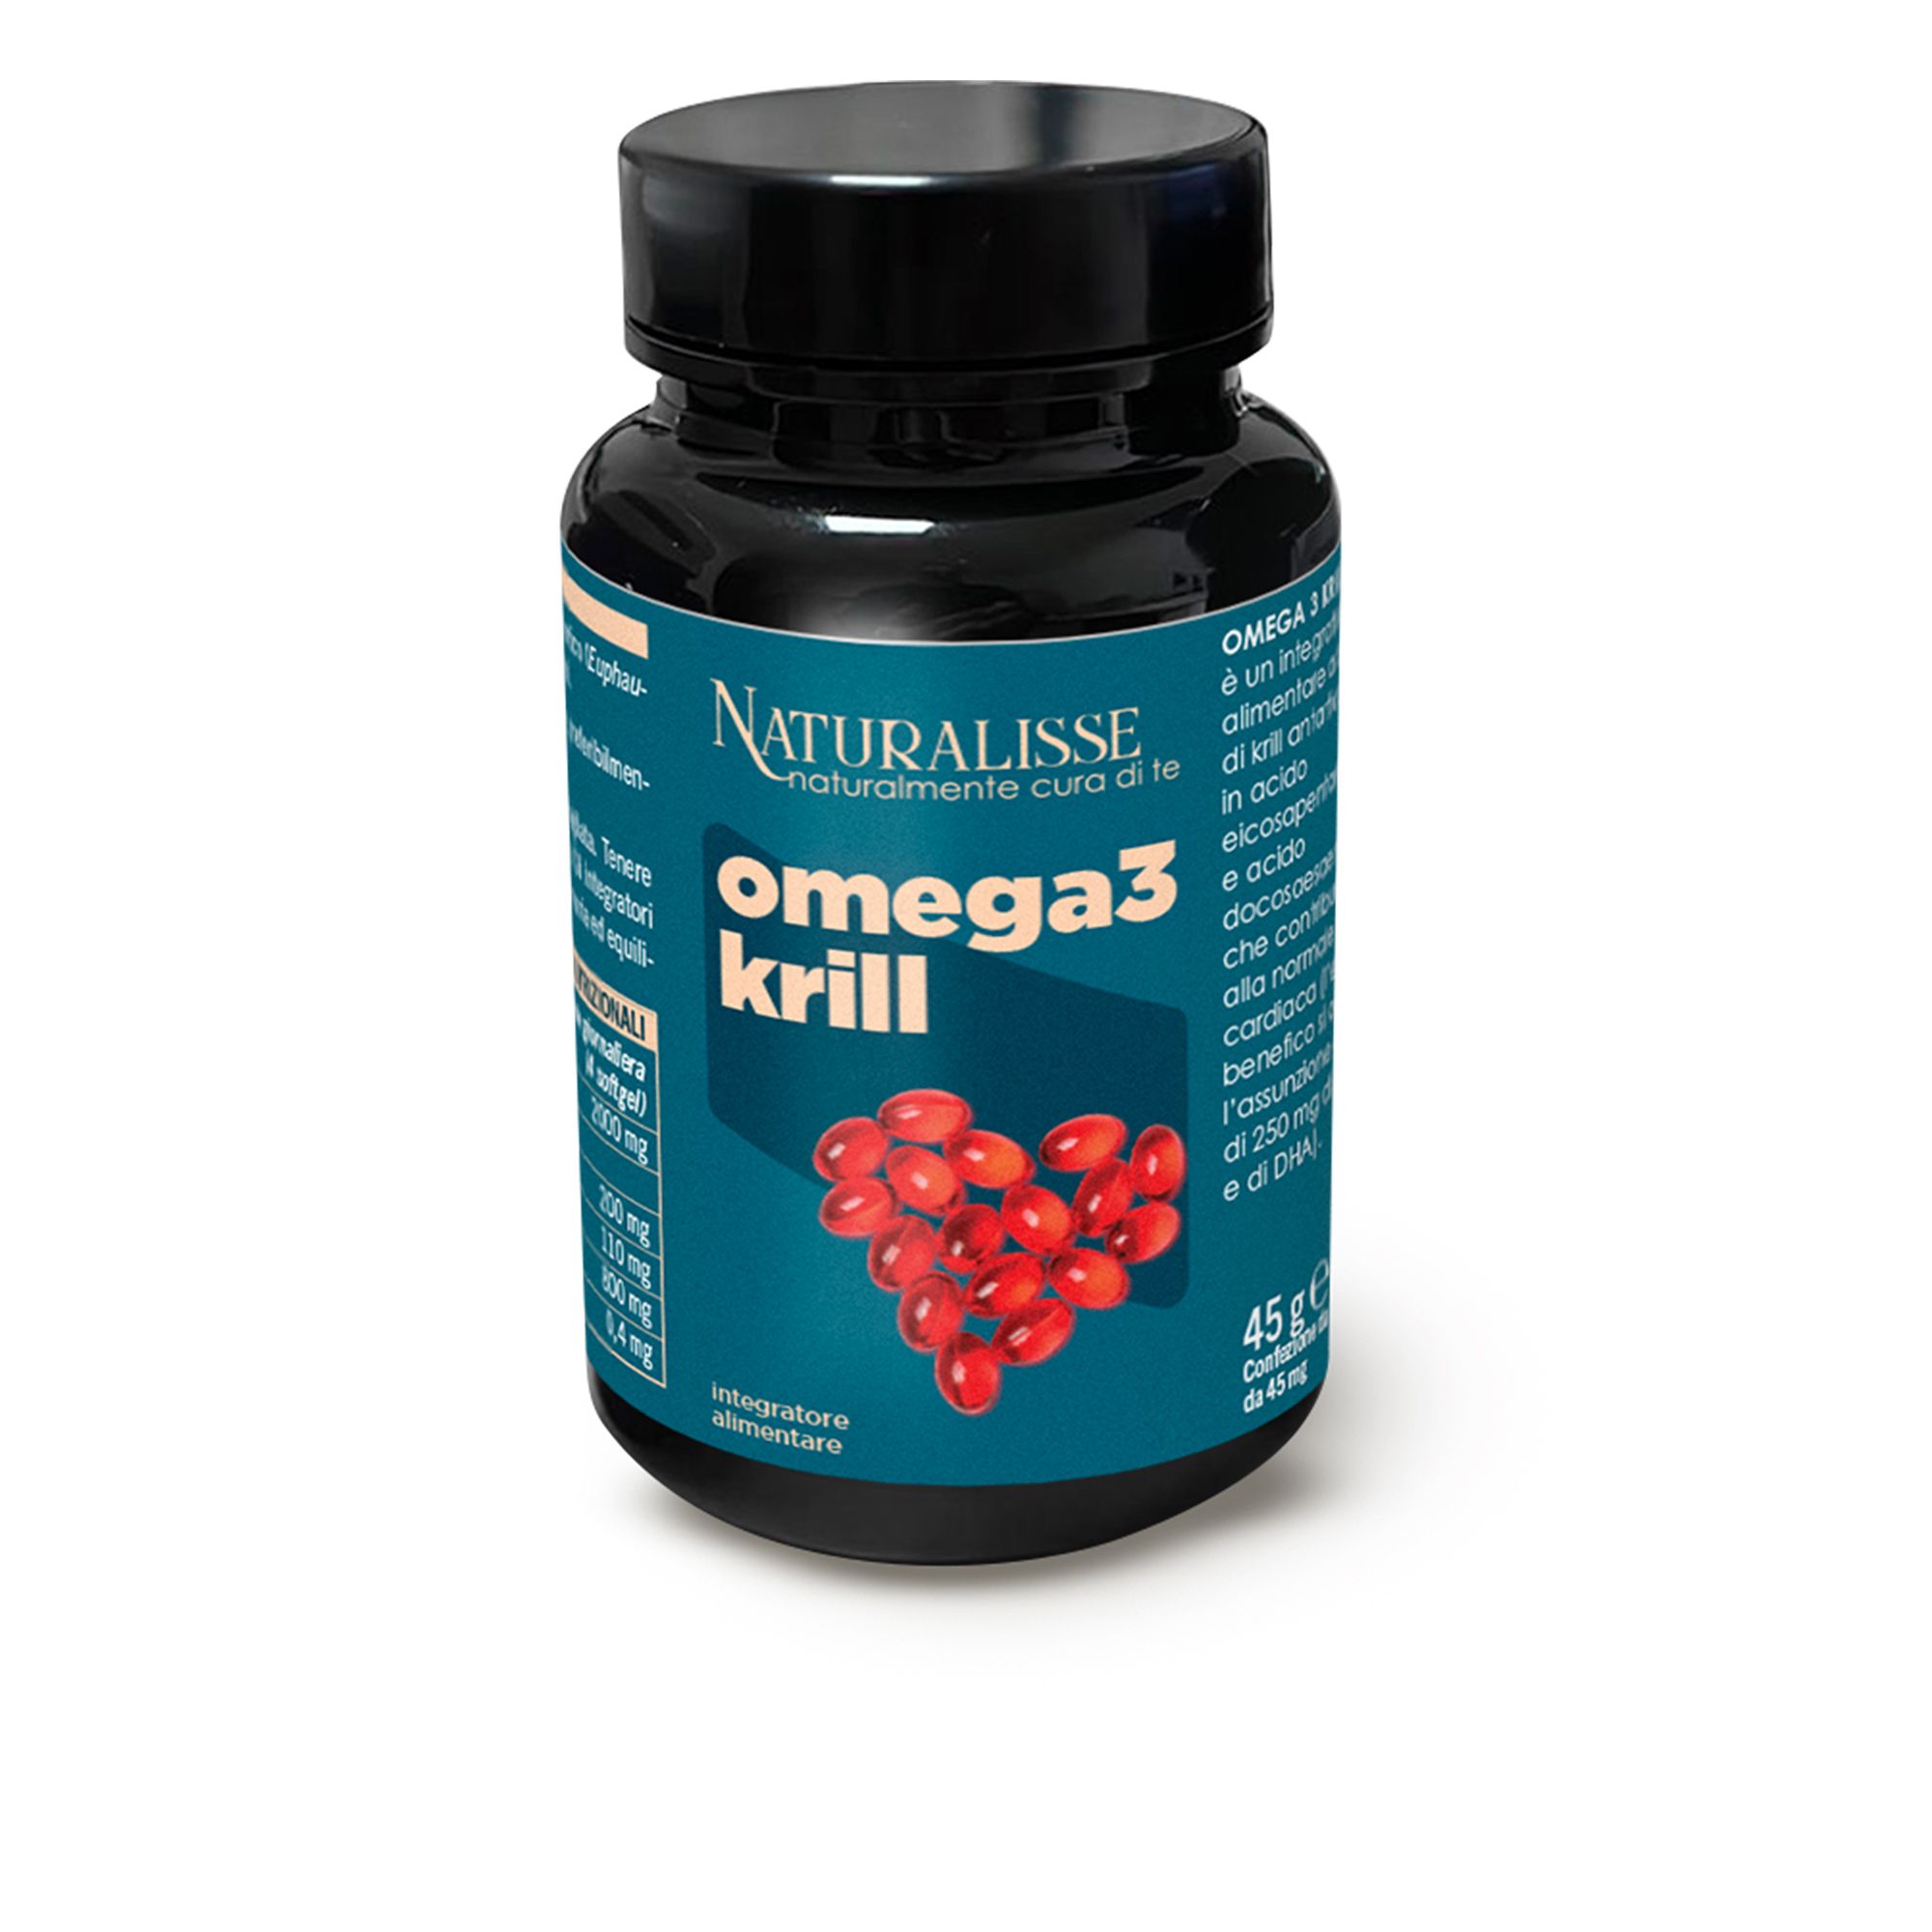 Image of Omega 3 Krill Integratore alimentare con olio di krill